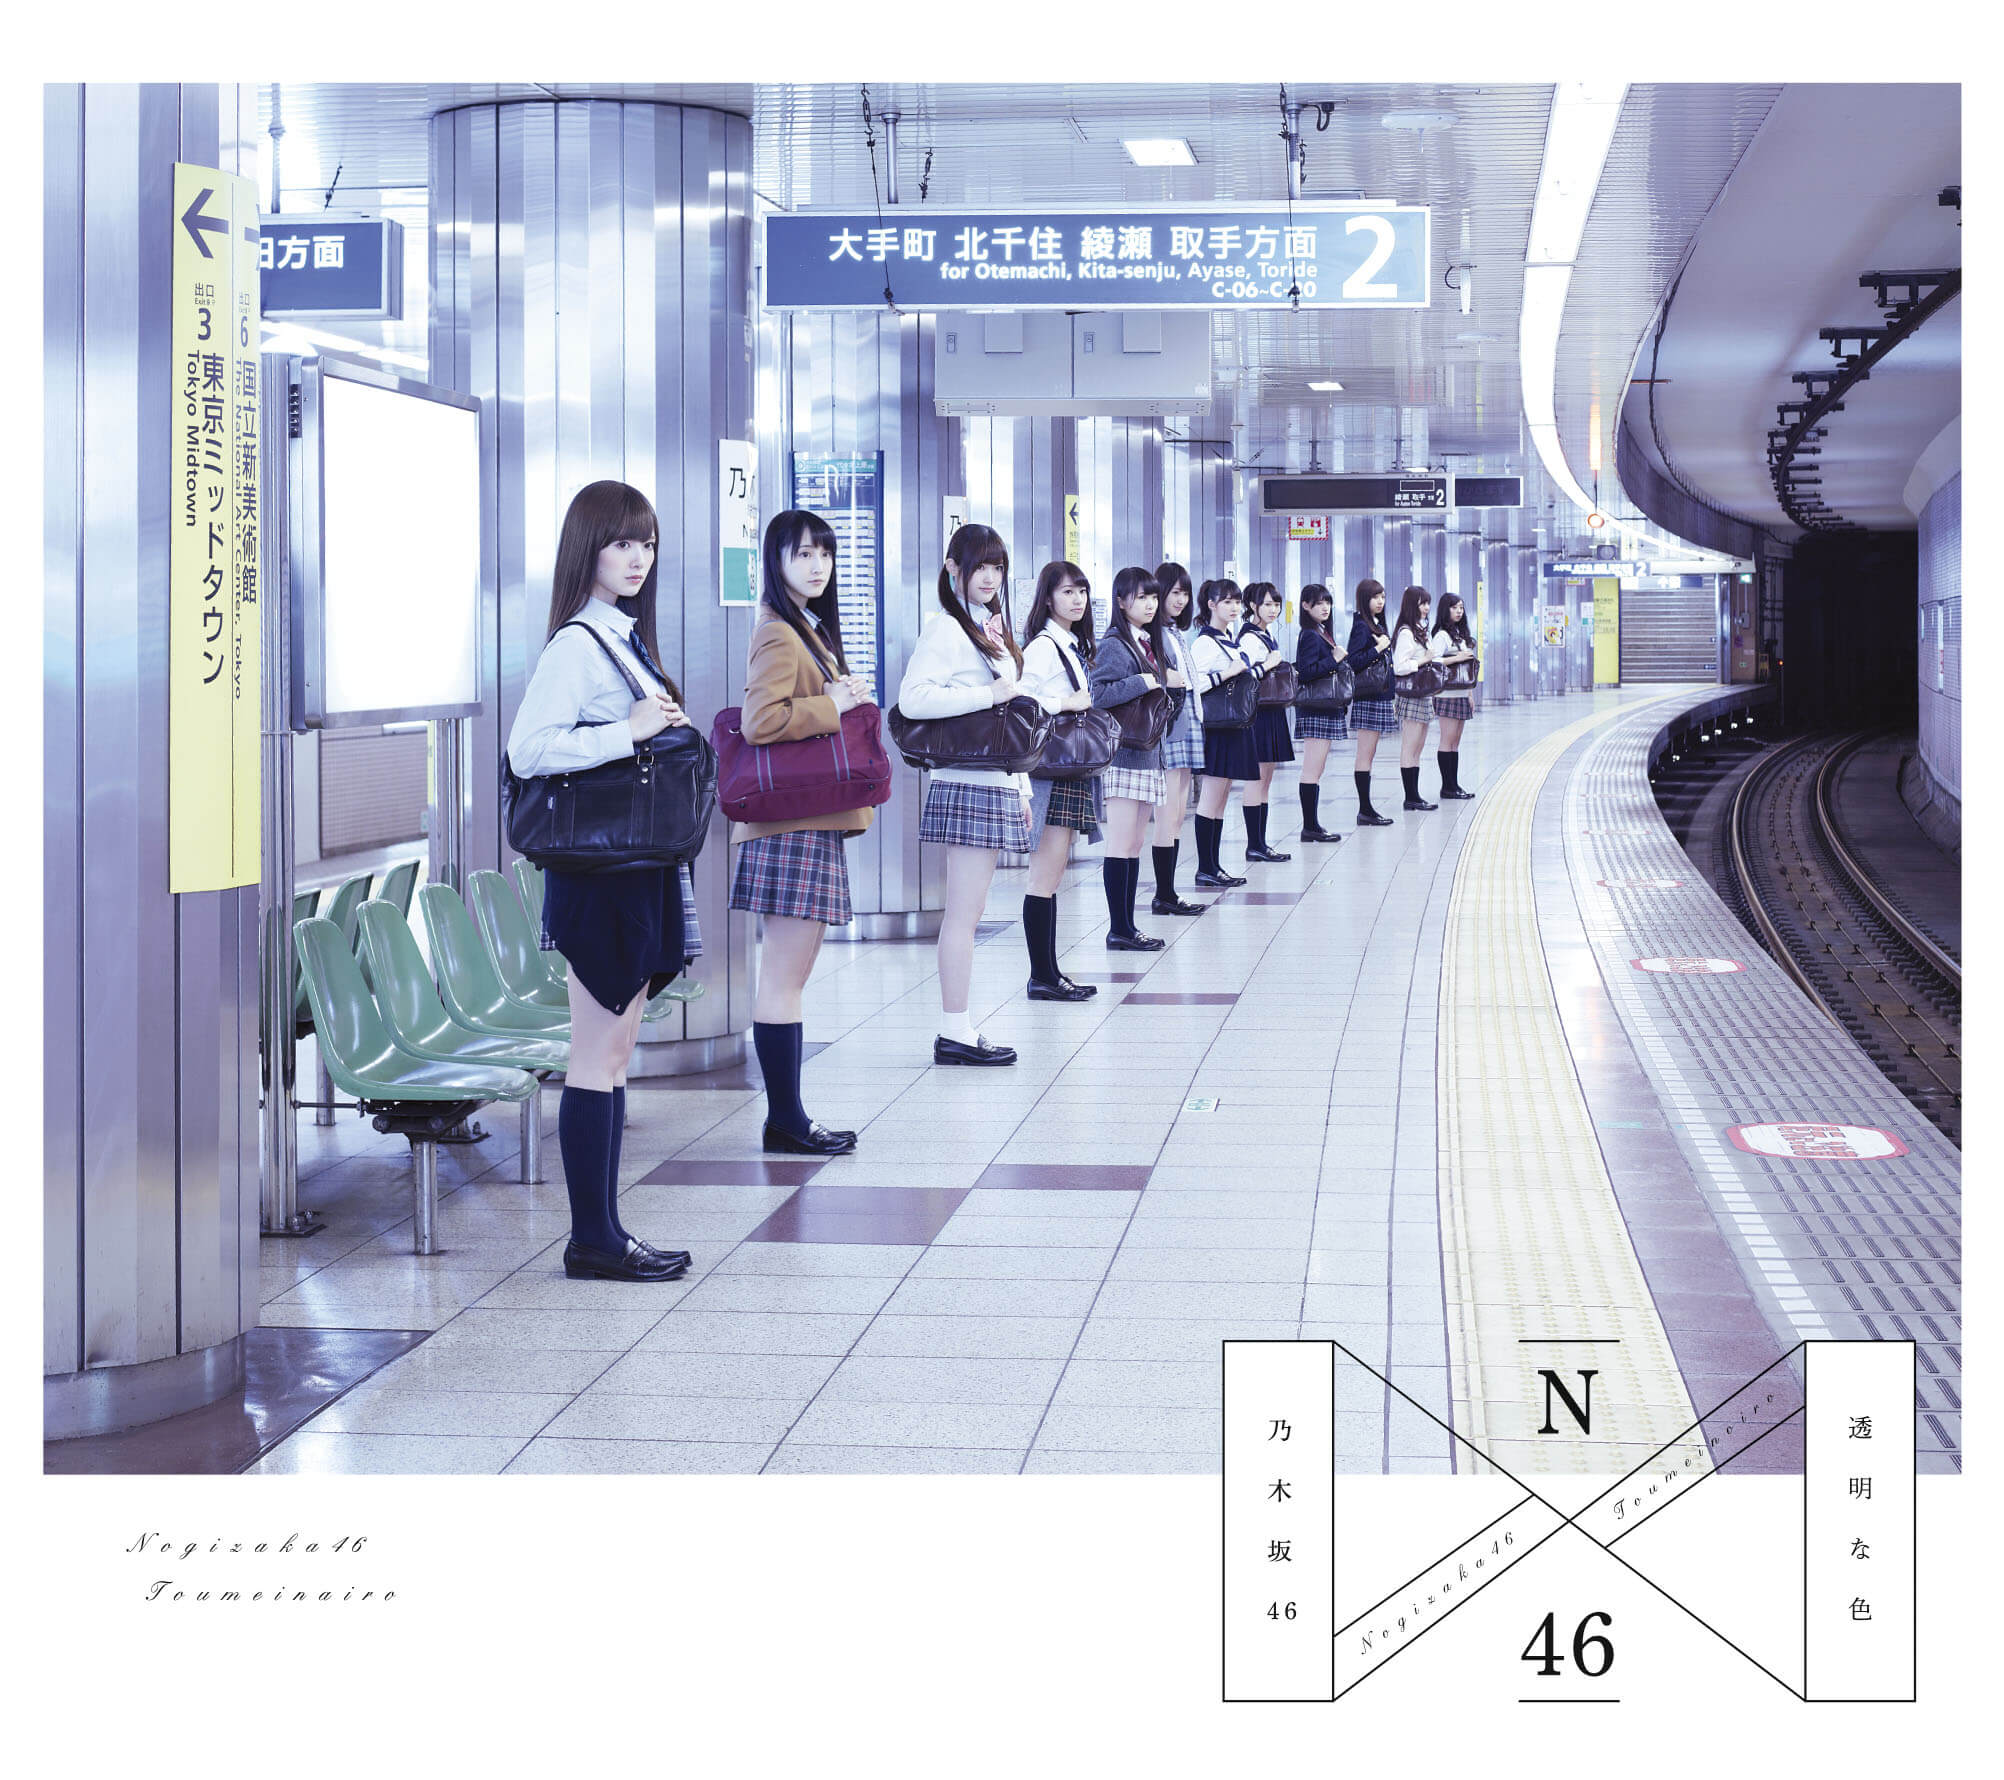 乃木坂46 1st Album 透明な色 - 乃木坂46 データセンター